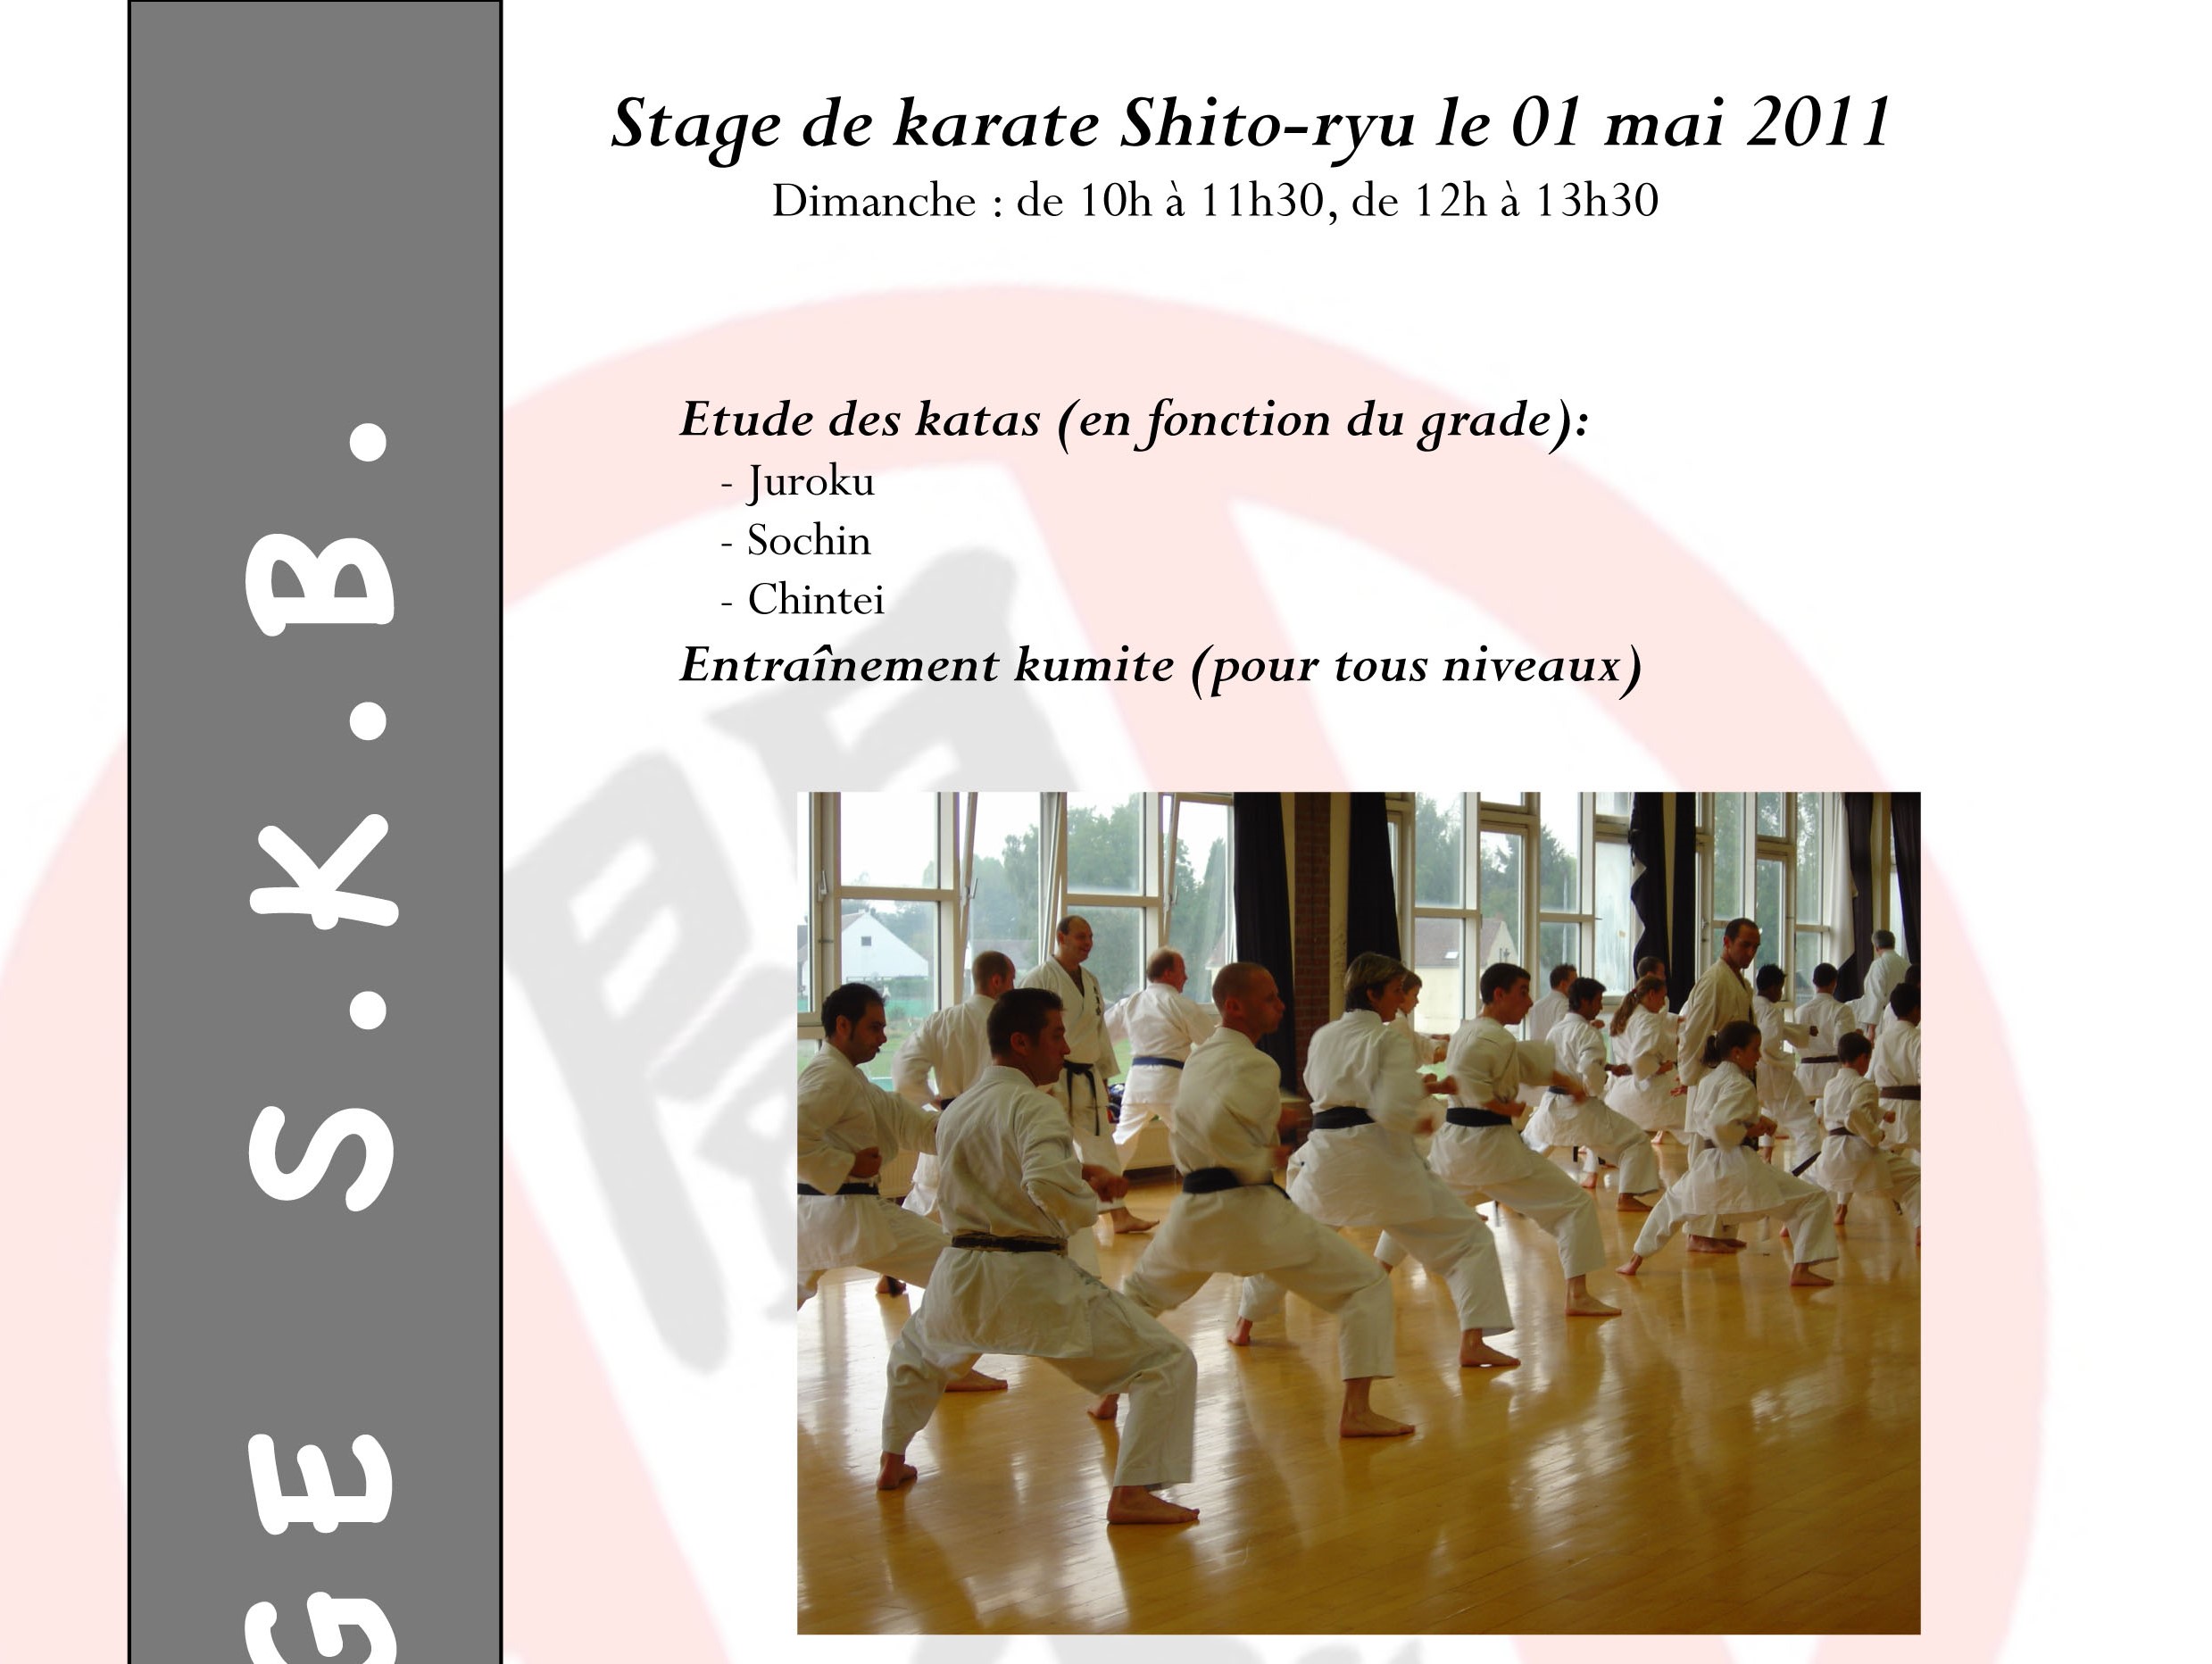 affiche stage SKB 20110501 FR